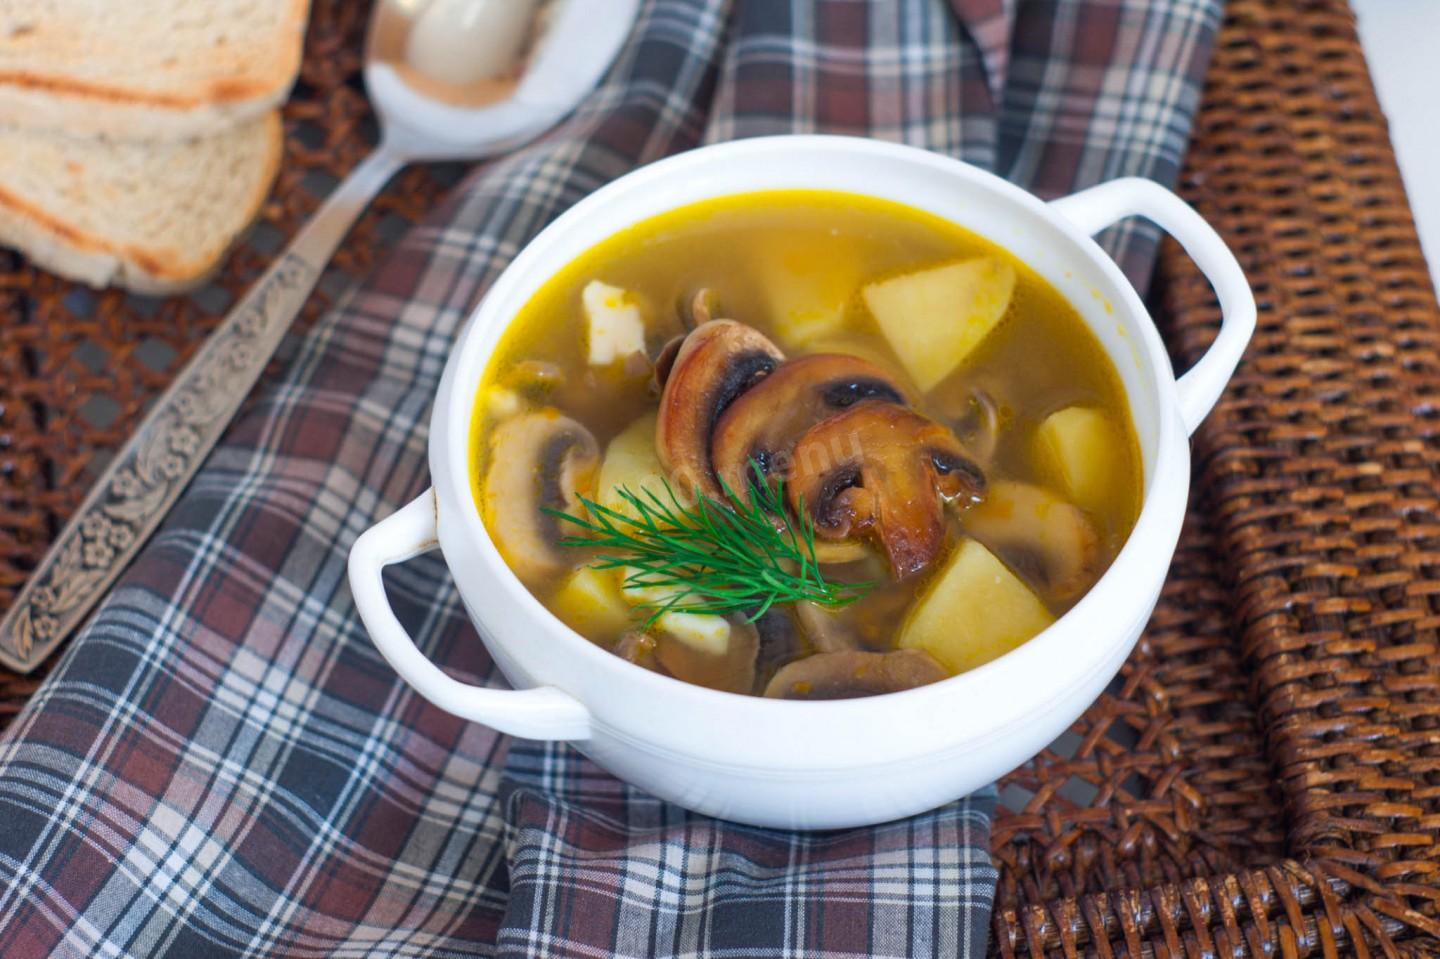 Суп с сыром и грибами и курицей рецепт с фото пошагово